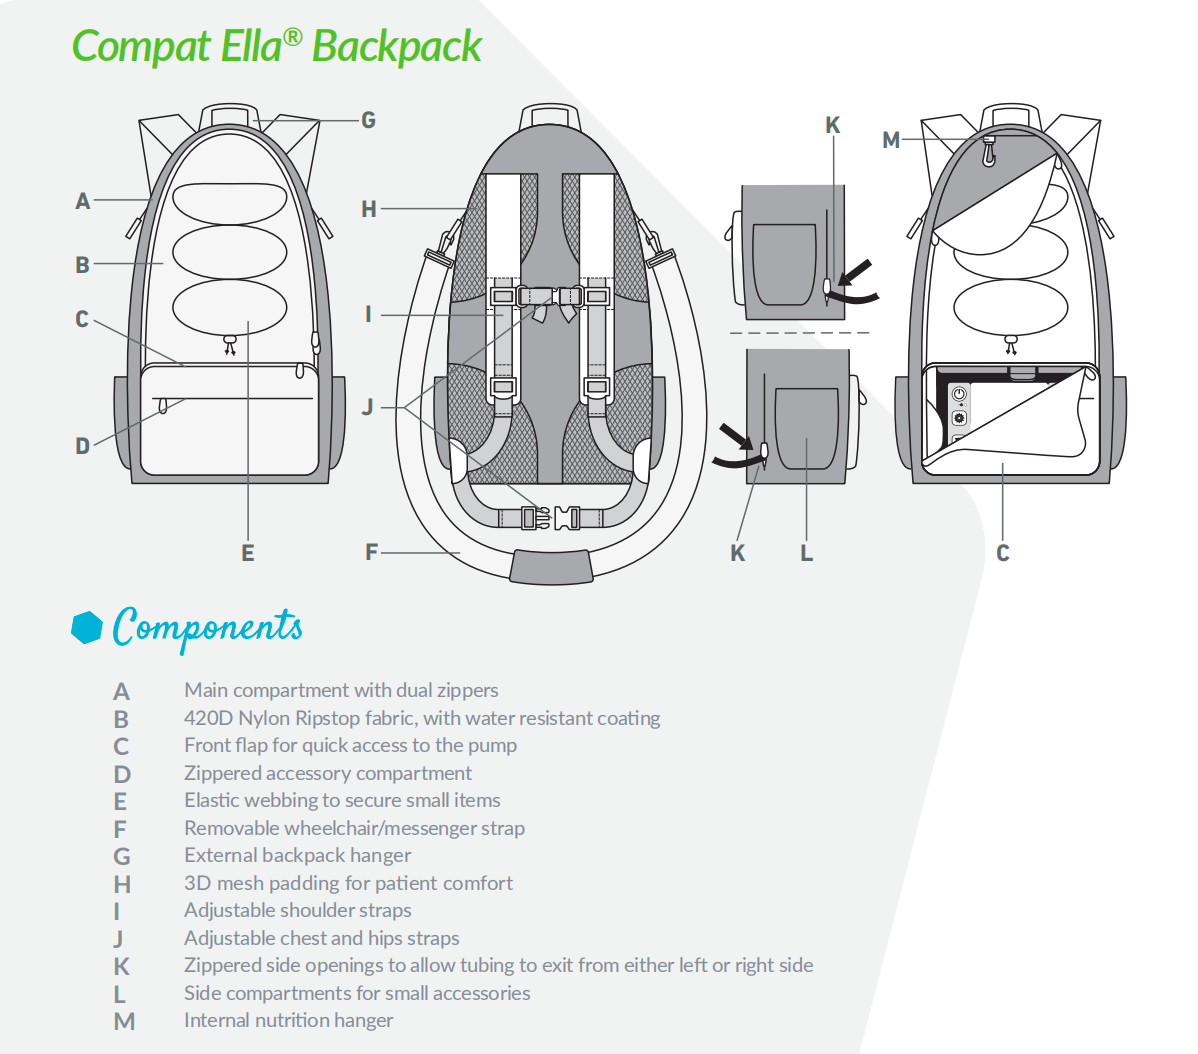 Compat Ella® Backpack